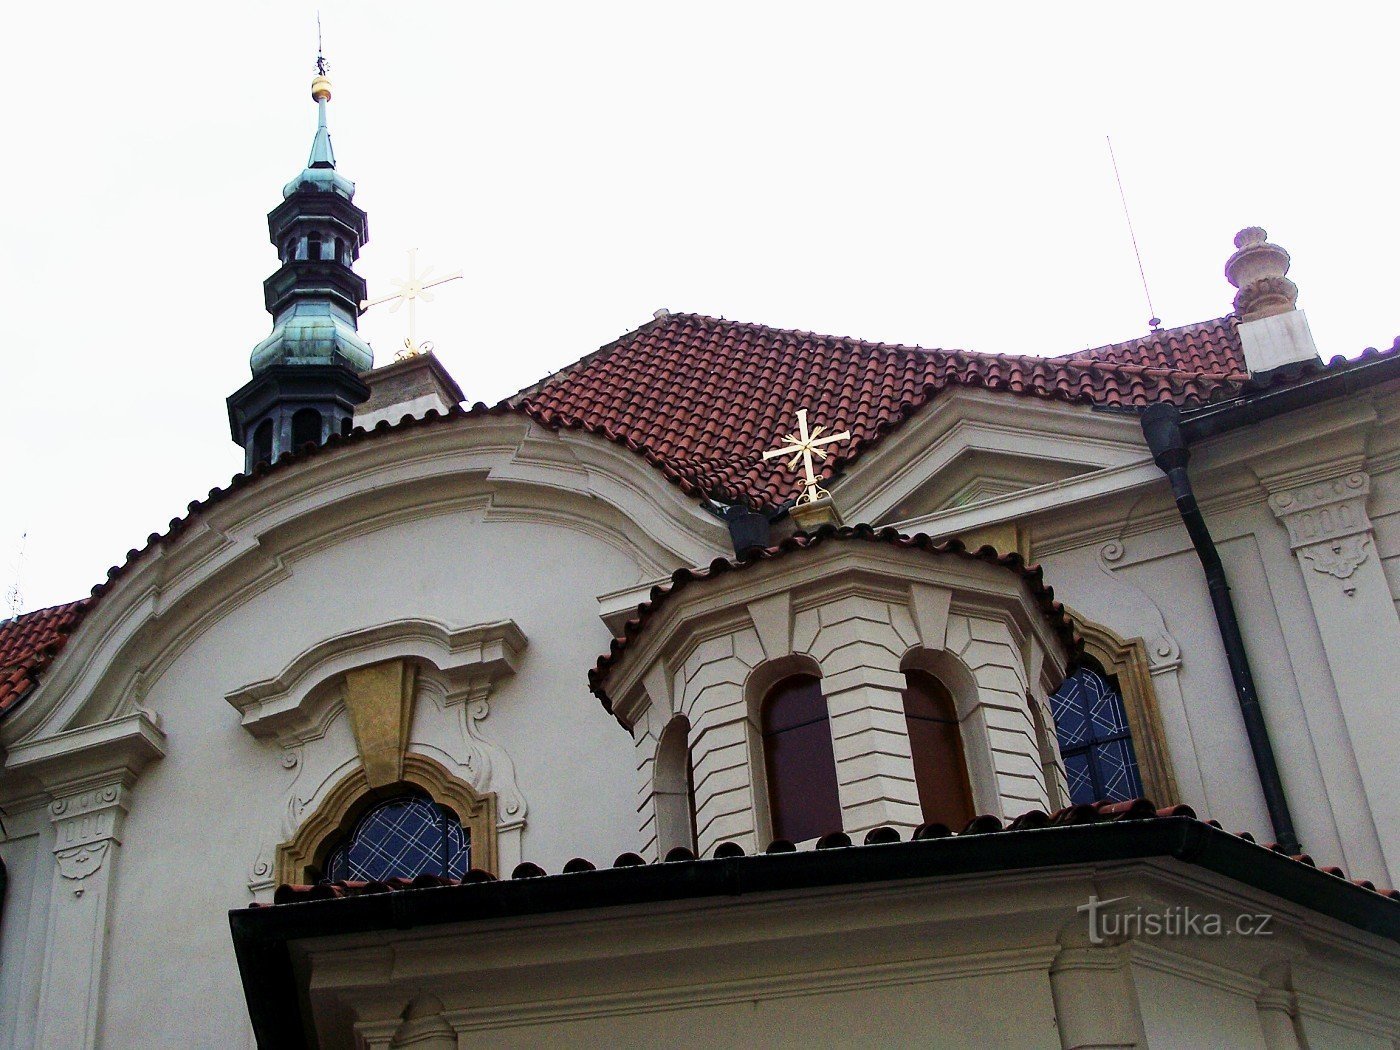 Praga - Igreja de S. Vojtěch, o Grande